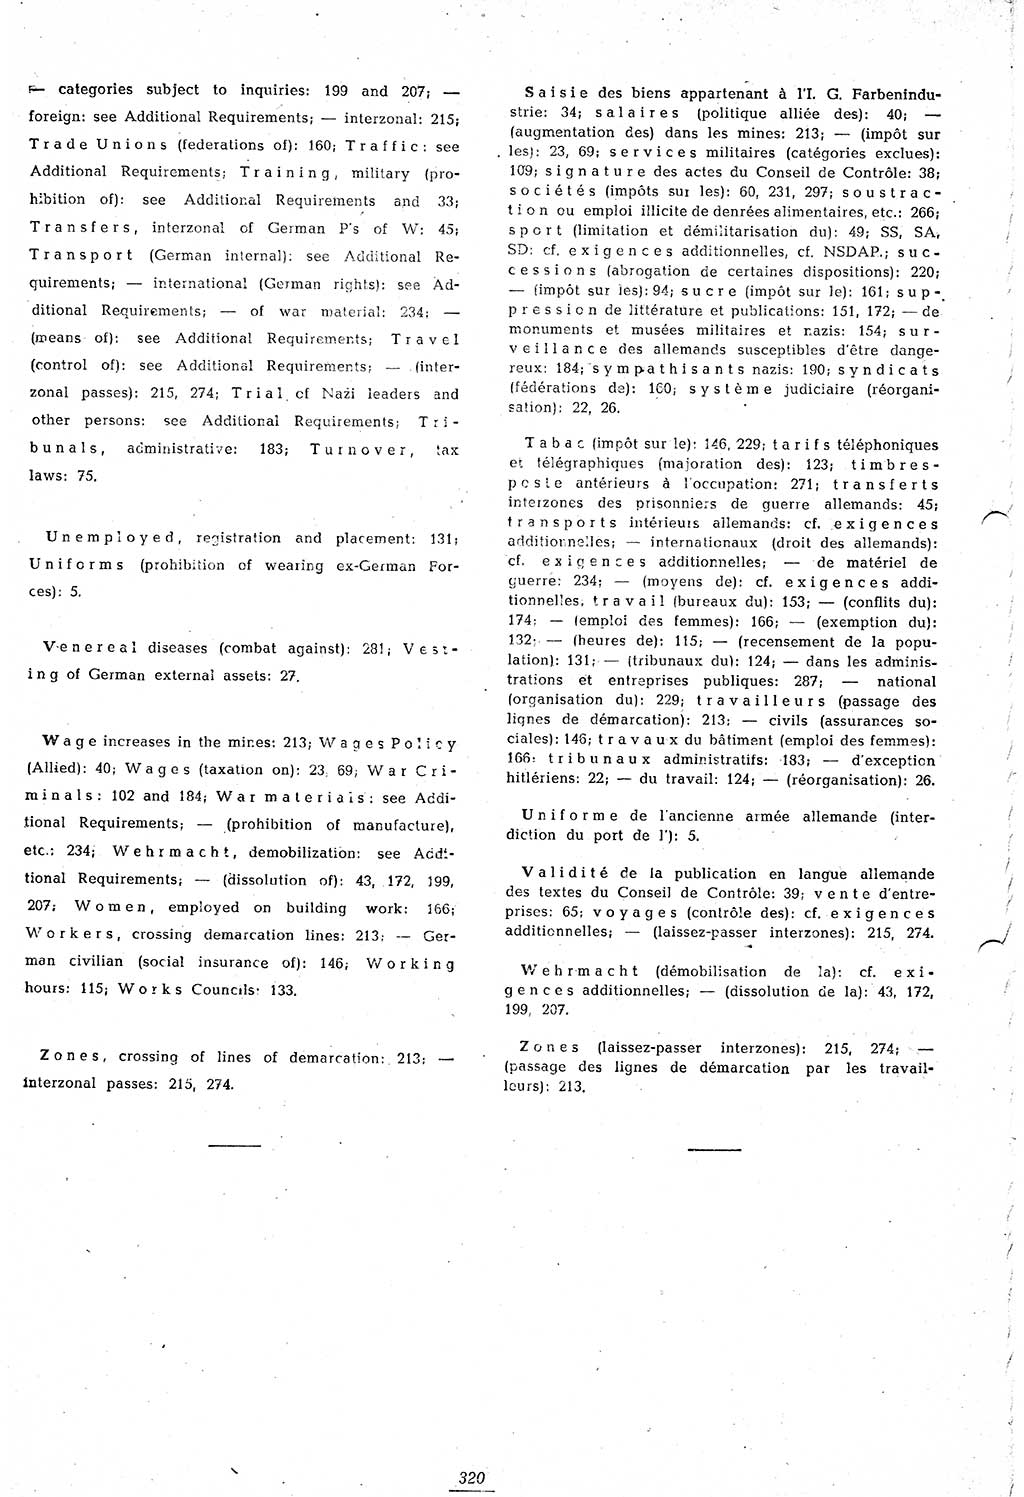 Amtsblatt des Kontrollrats (ABlKR) in Deutschland 1948, Seite 320/1 (ABlKR Dtl. 1948, S. 320/1)